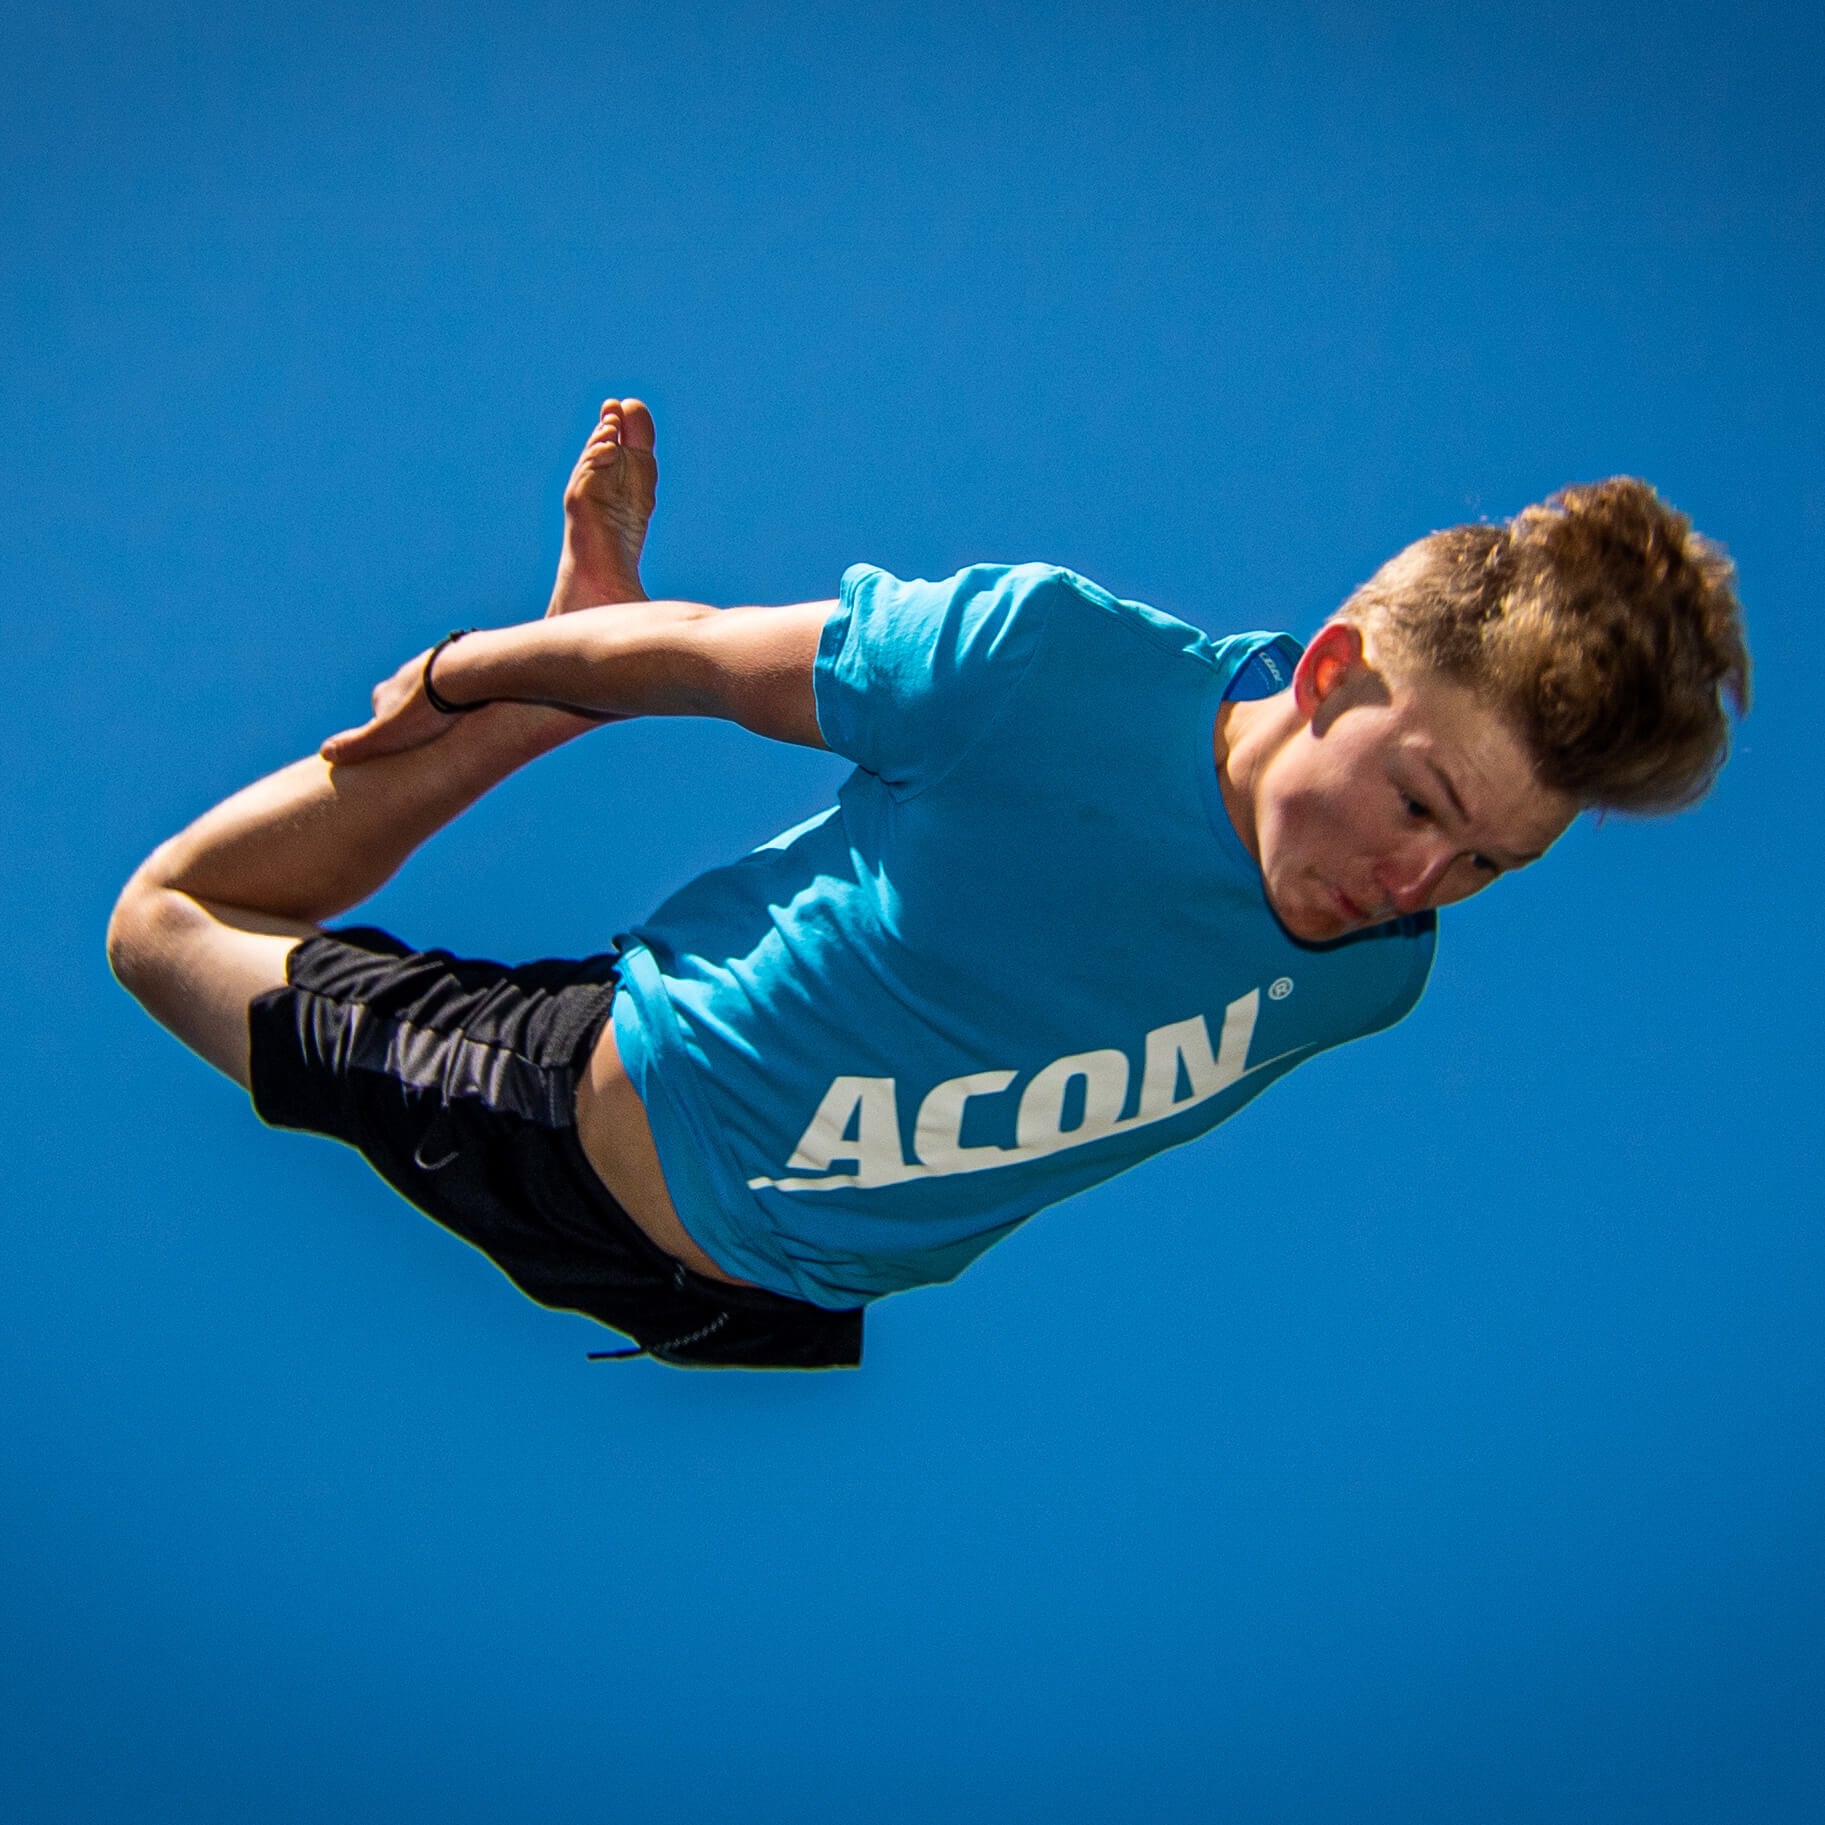 Un garçon vêtu d'un t-shirt bleu ACON effectuant un saut sur le trampoline.